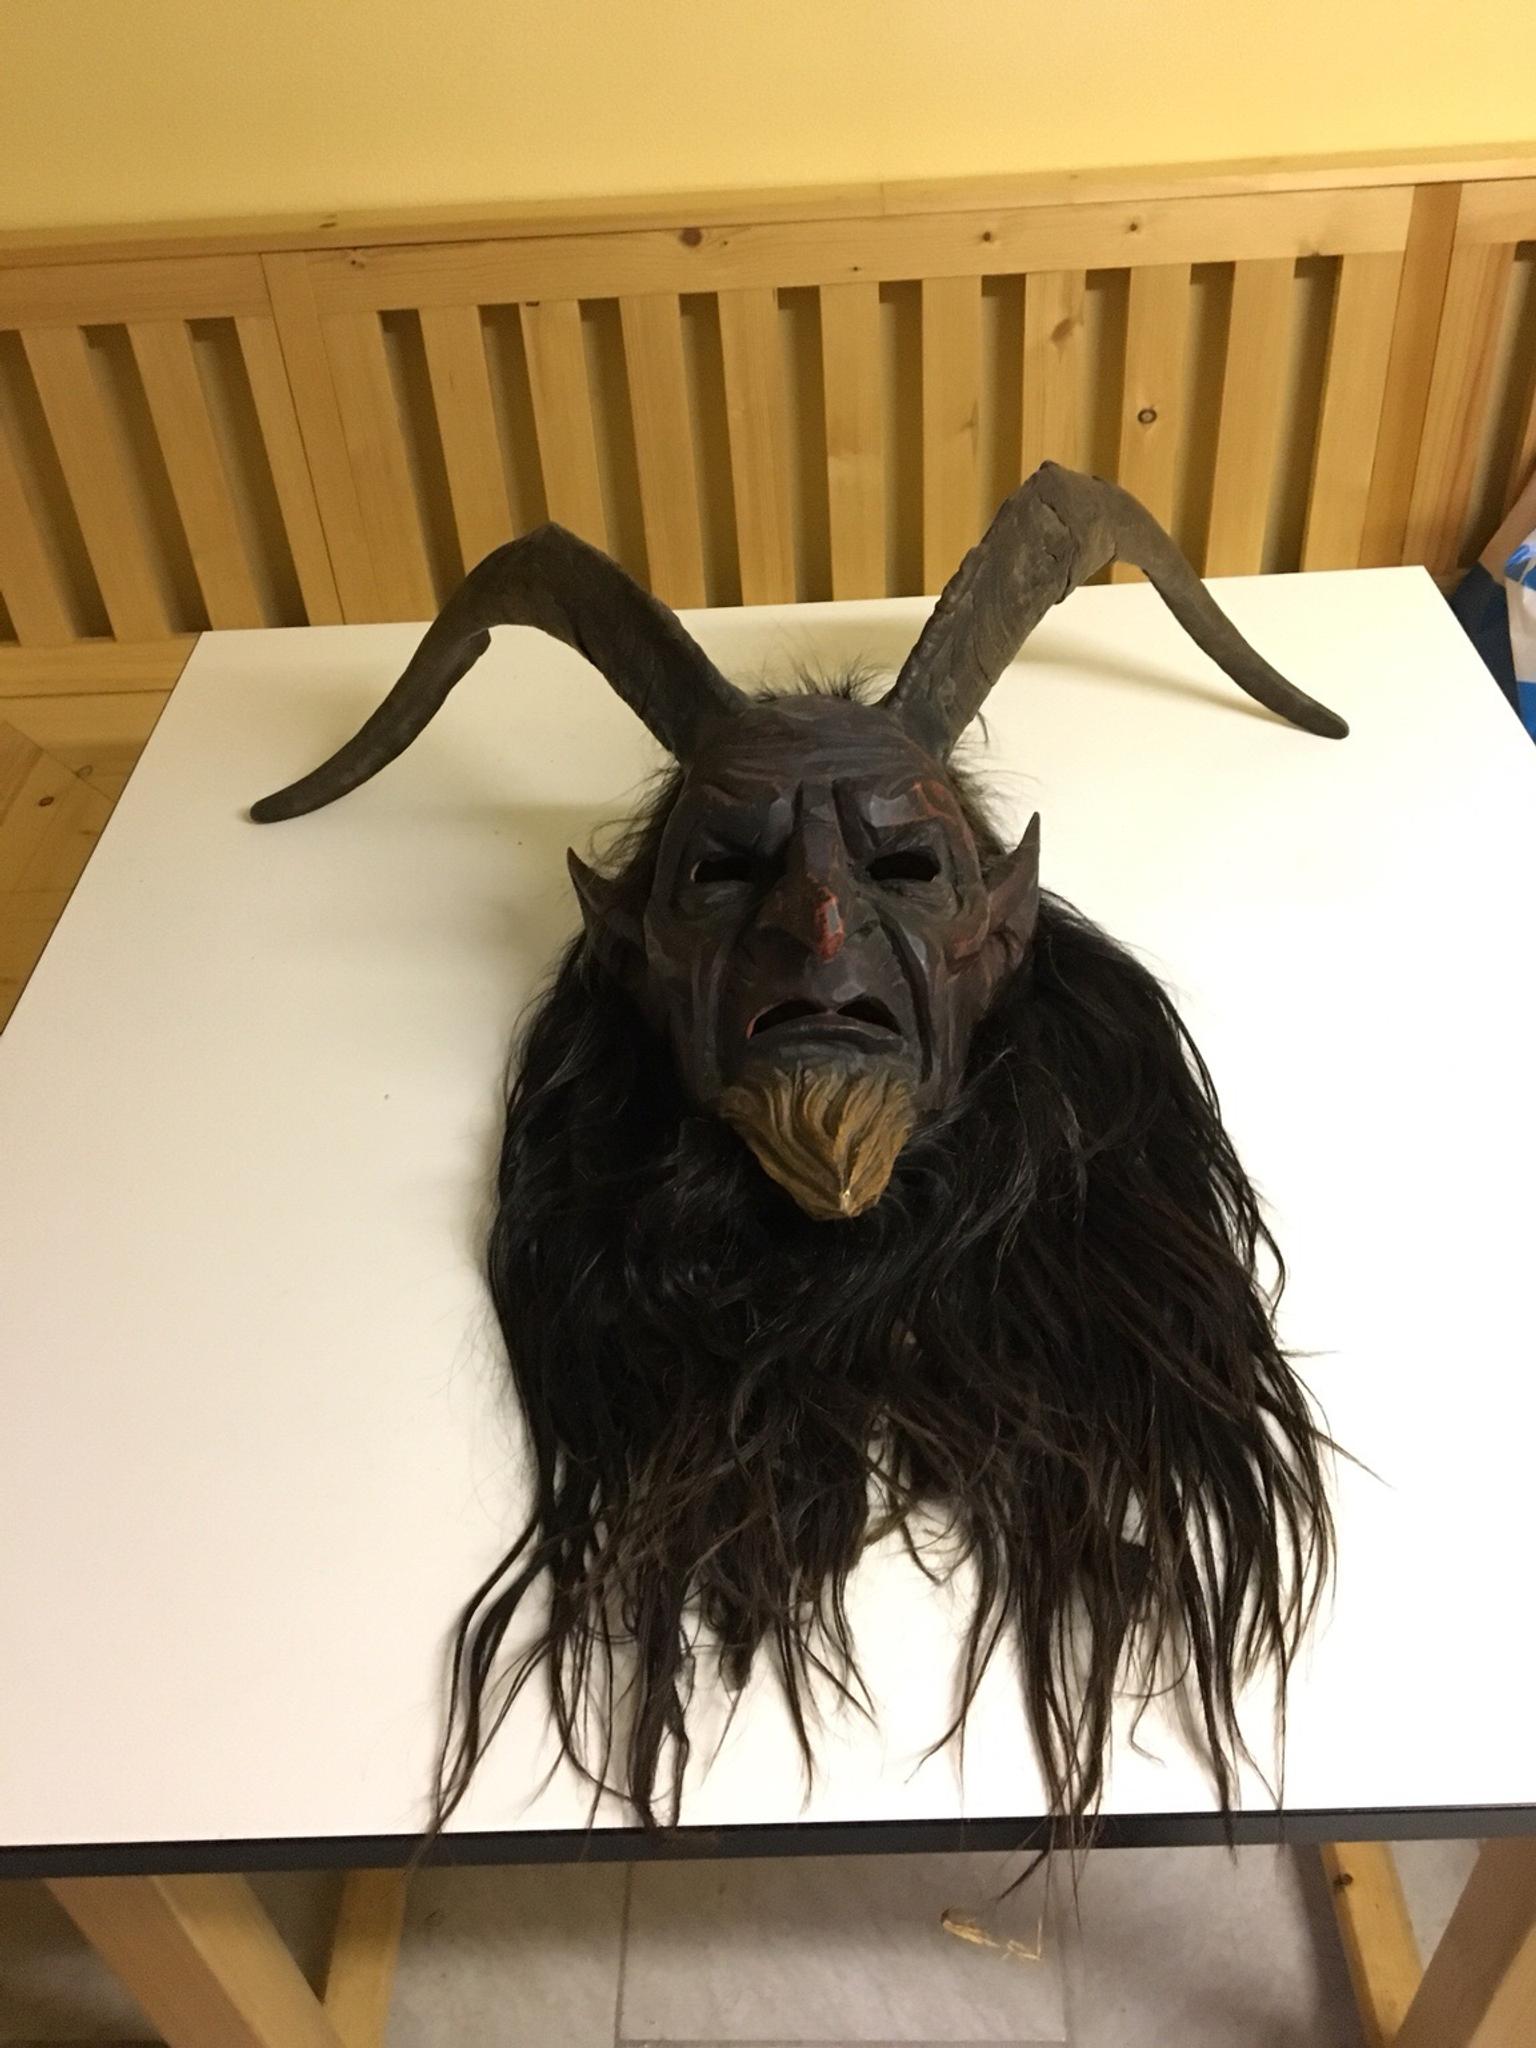 Perchten Krampus Maske In 5230 Mattighofen For 240 00 For Sale